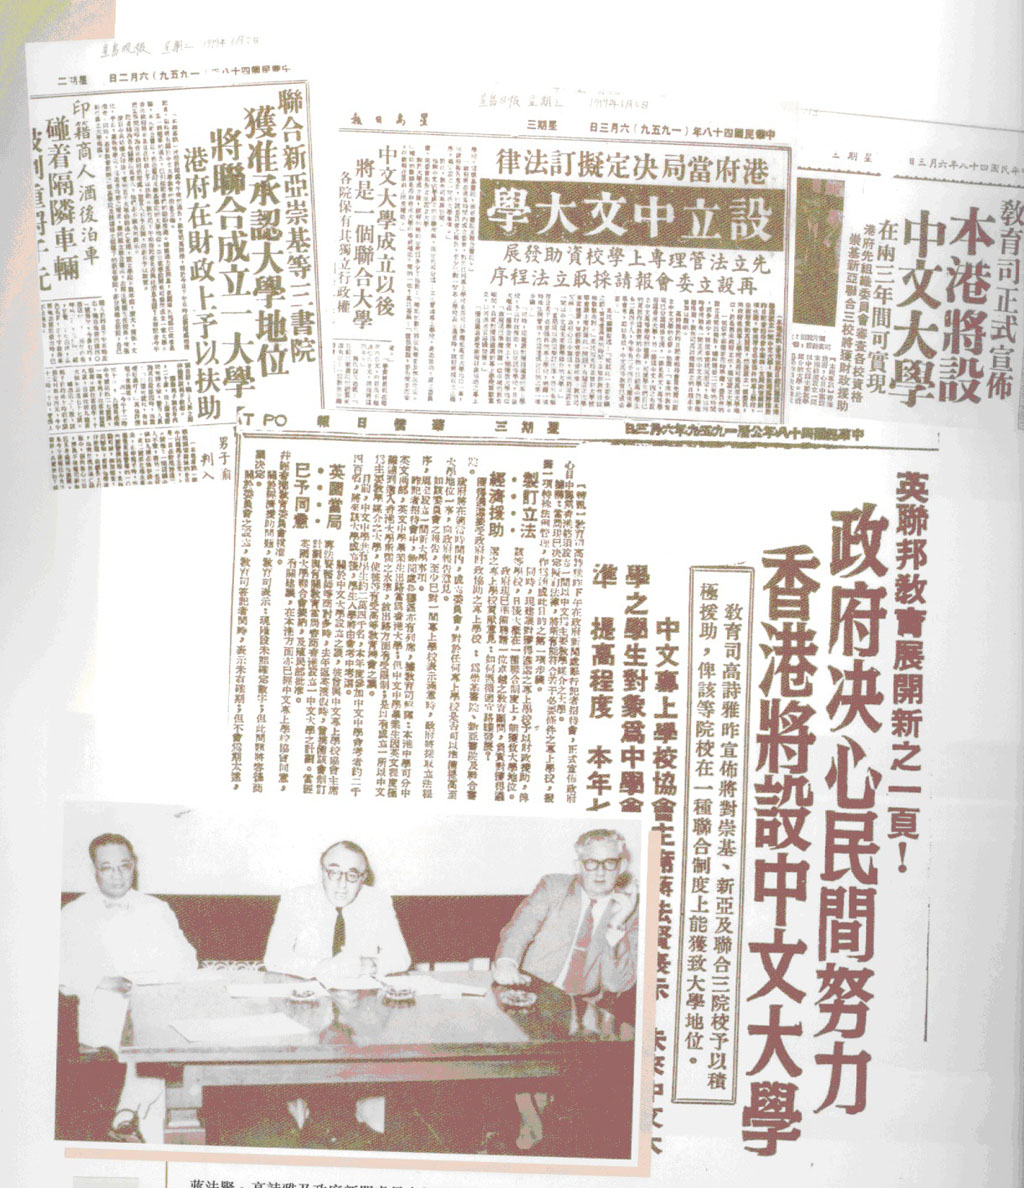 三院联合成为大学剪报(1959.6)